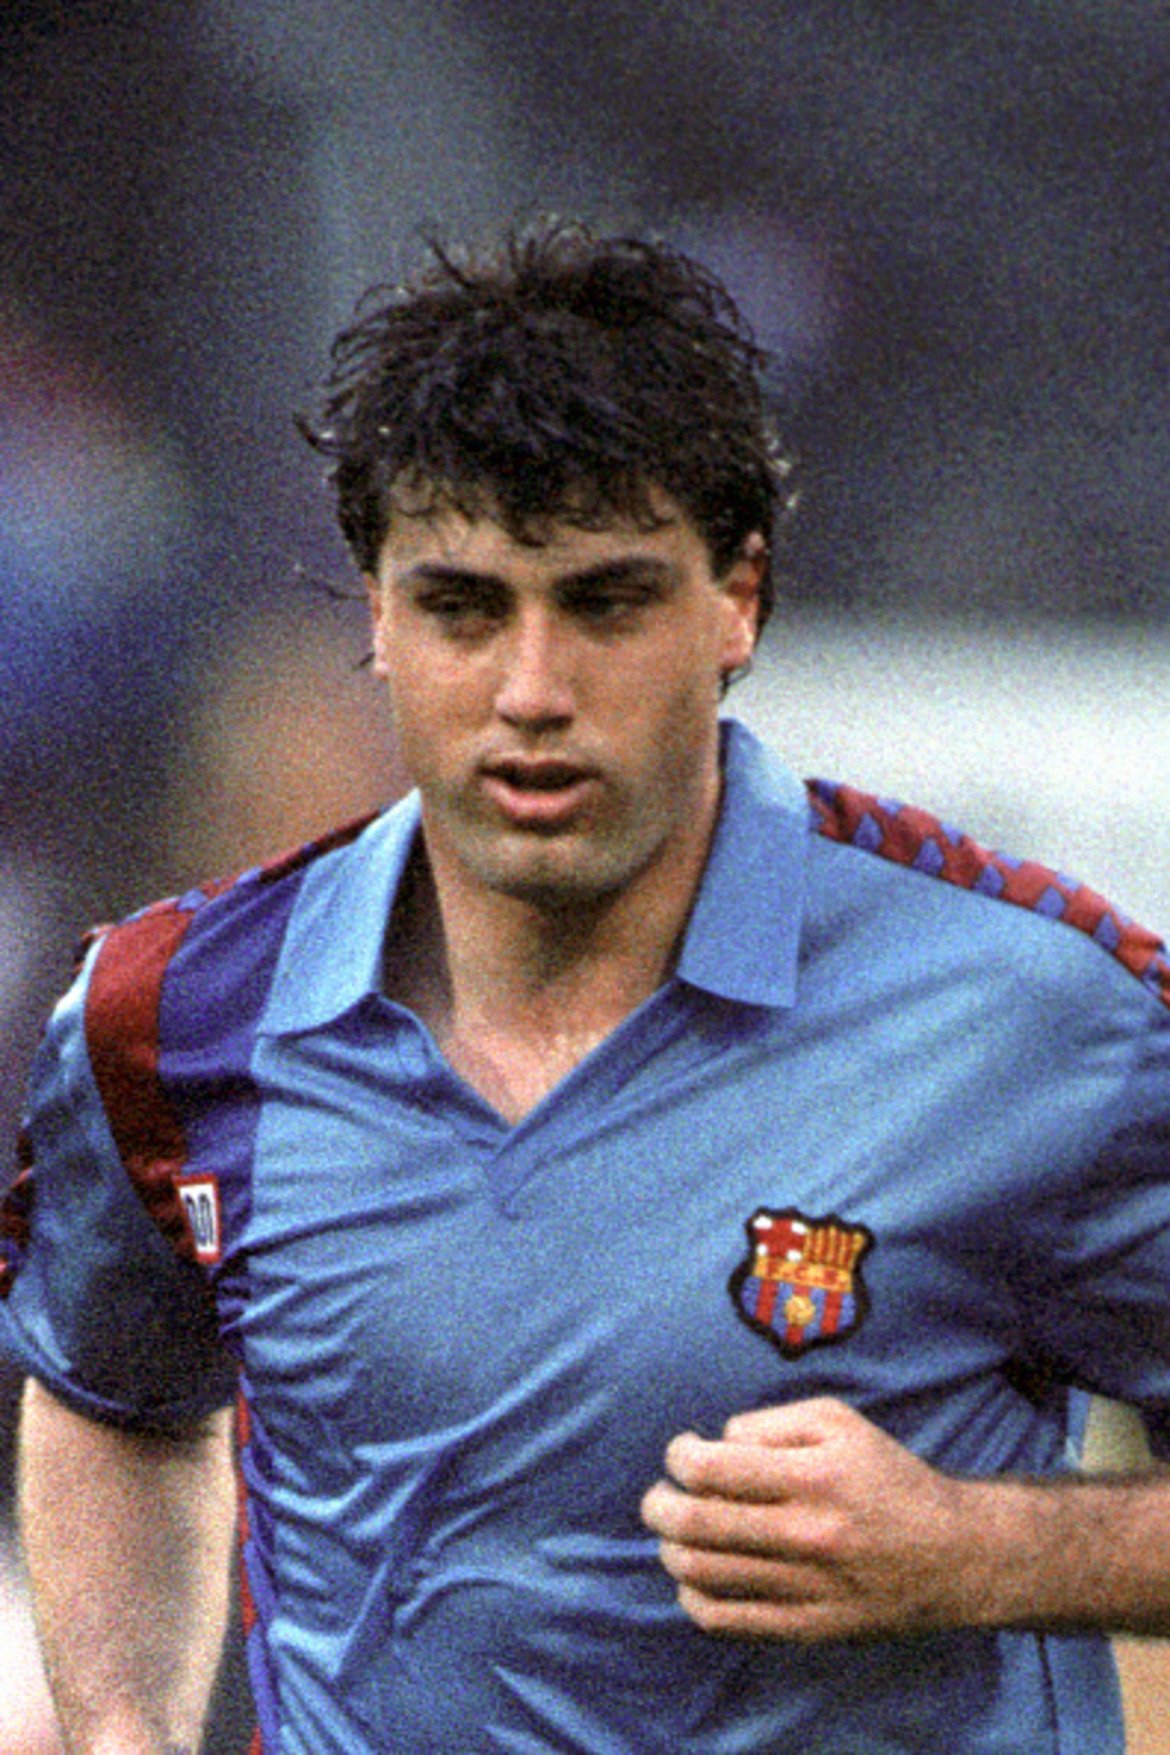 Нандо
Финалът през 1992 г. бе един от последните мачове за централния защитник в Барселона, който се върна в Севиля през лятото само за да бъде трансфериран в Реал Мадрид, където игра между 1992 и 1996 г. След това доигра кариерата си в Еспаньол, а след като окачи бутонките се занимава със собствен бизнес.